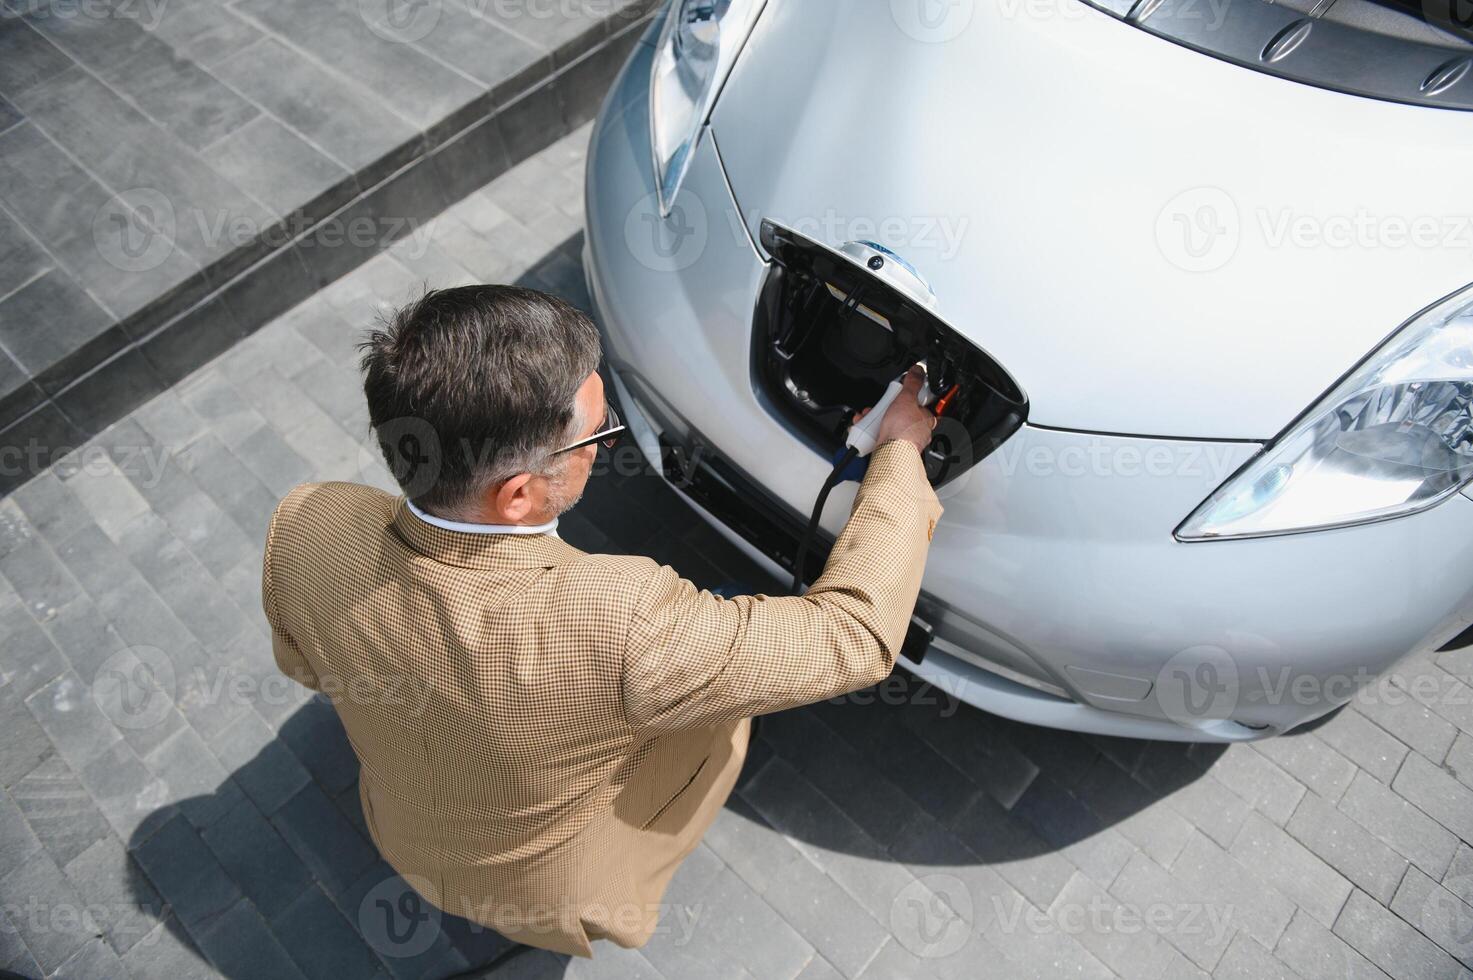 Mann halten Leistung Verbinder zum elektrisch Auto foto